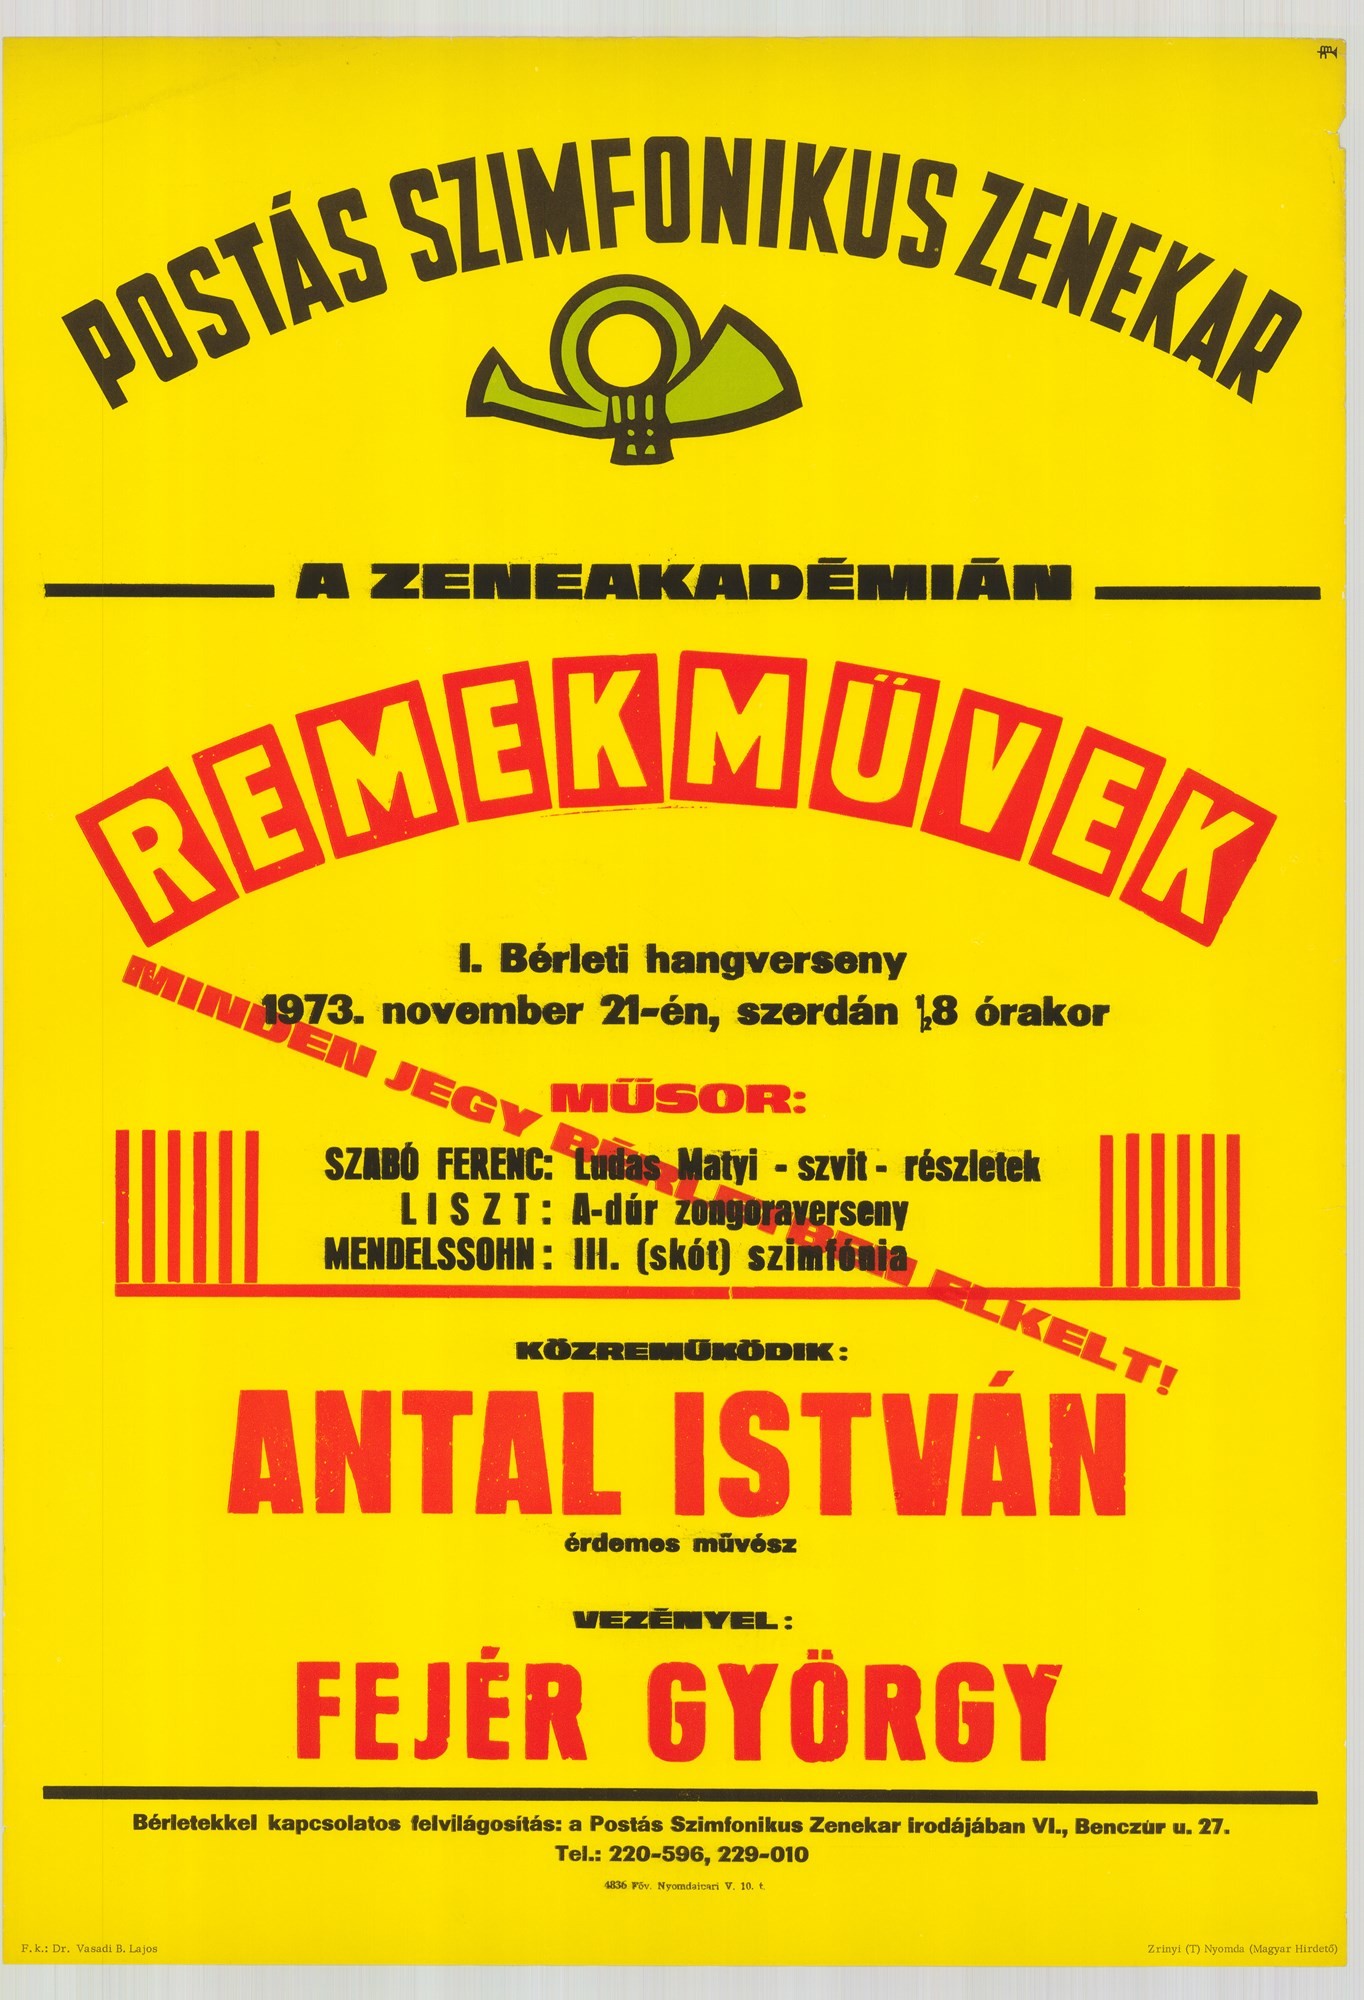 Plakát - Postás Szimfonikus Zenekar a Zeneakadémián, Remekművek, 1973 (Postamúzeum CC BY-NC-SA)